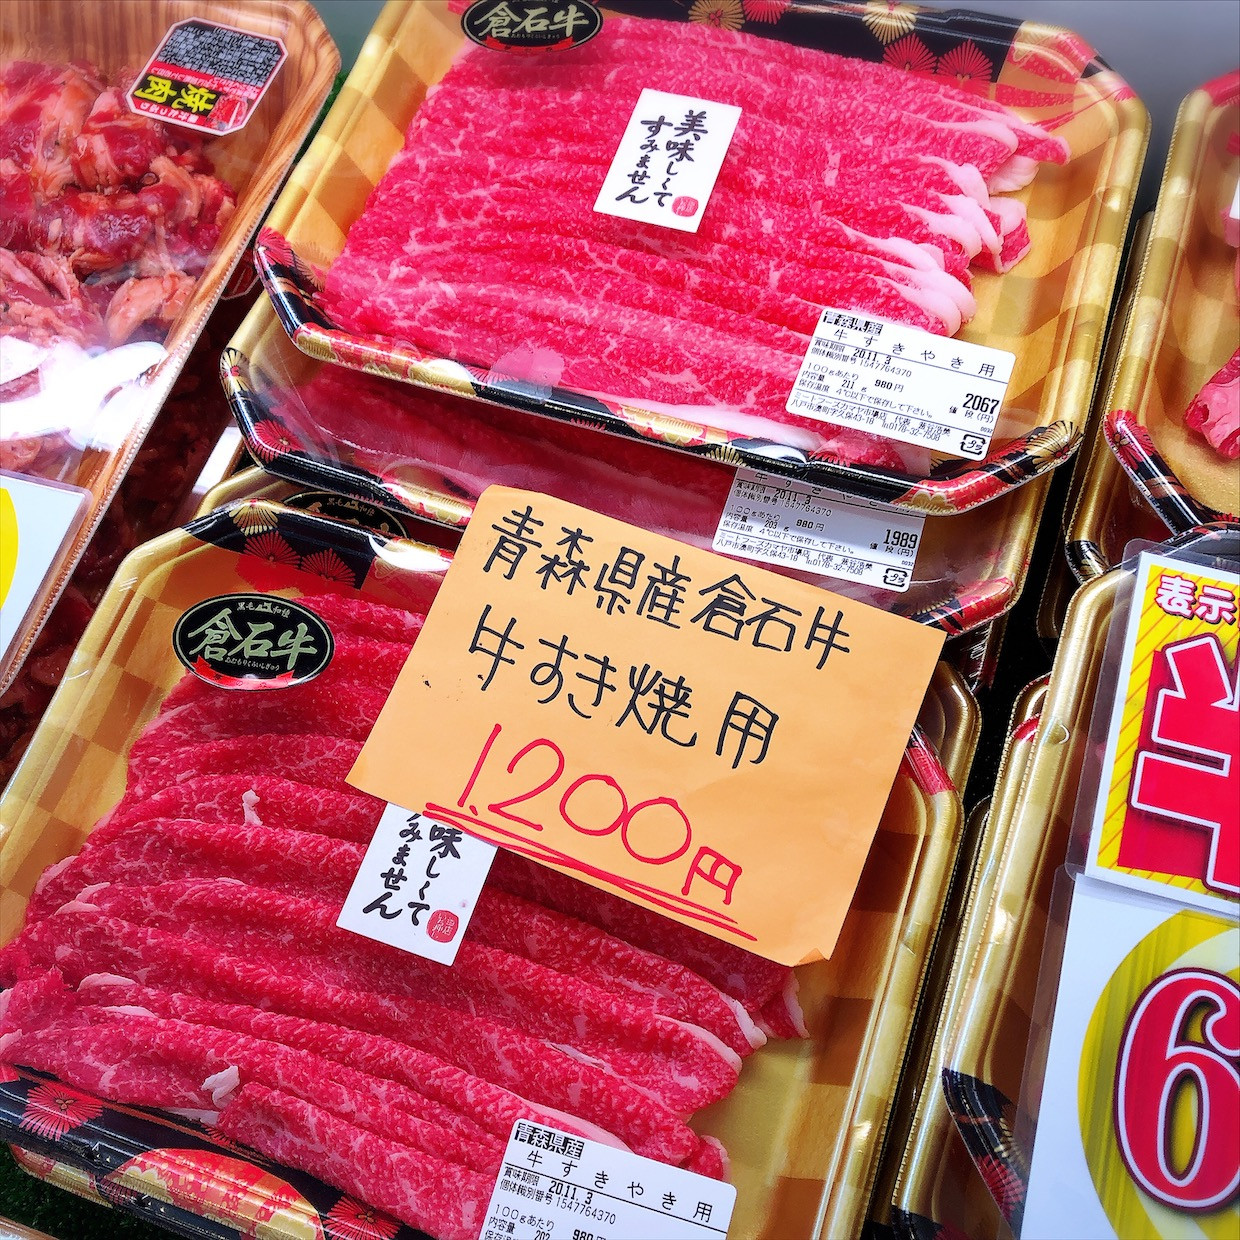 本日は青森県産倉石牛すき焼き用がお買得です。